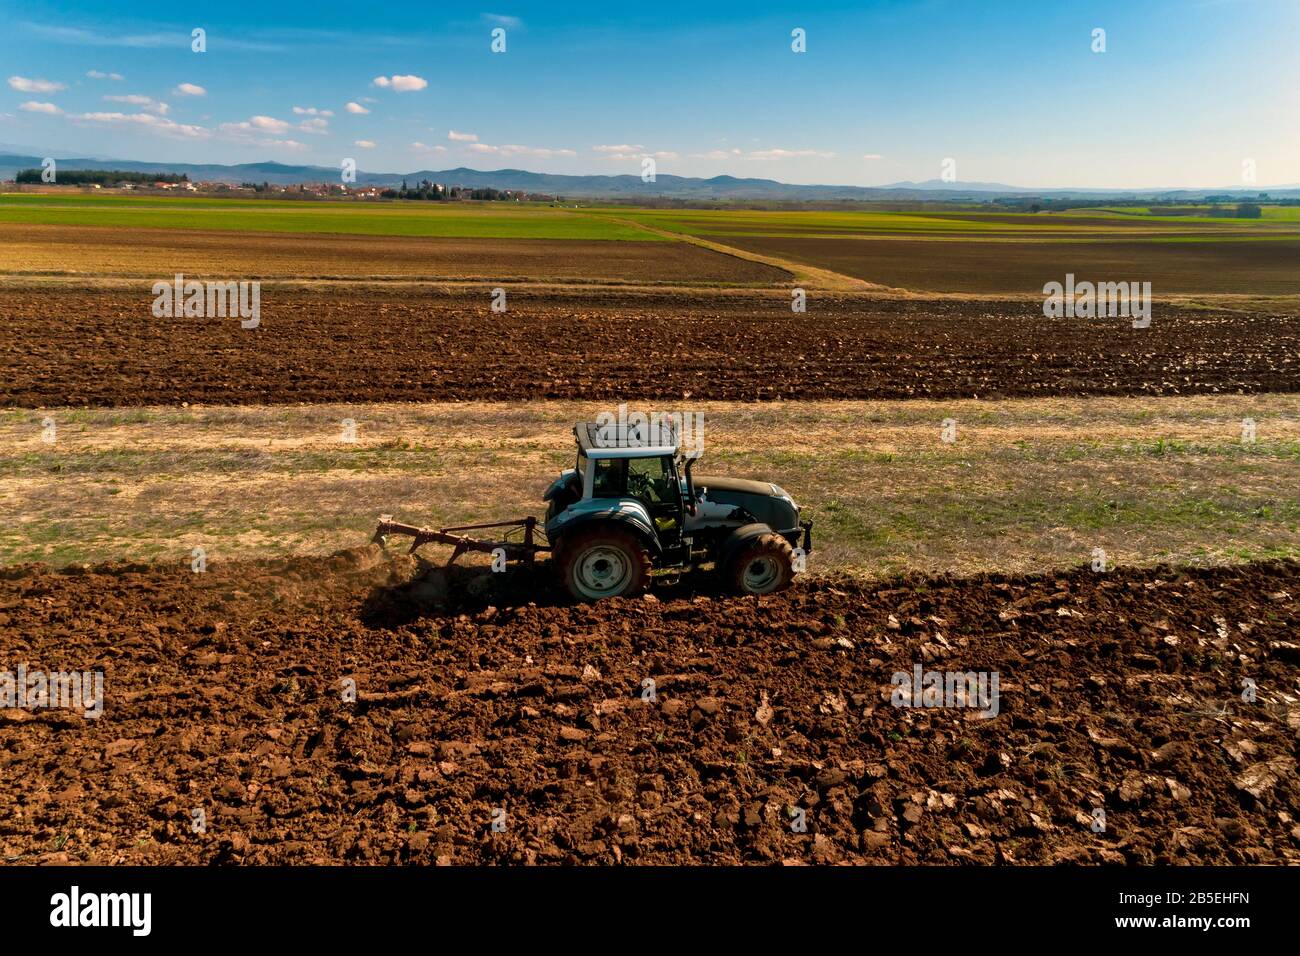 Luftdrohne schoss von einem Bauern in Traktorseeding und säte landwirtschaftliche Nutzpflanzen auf dem Feld auf den fruchtbaren Bauernfeldern von Kilkis in Nordgriechenland Stockfoto